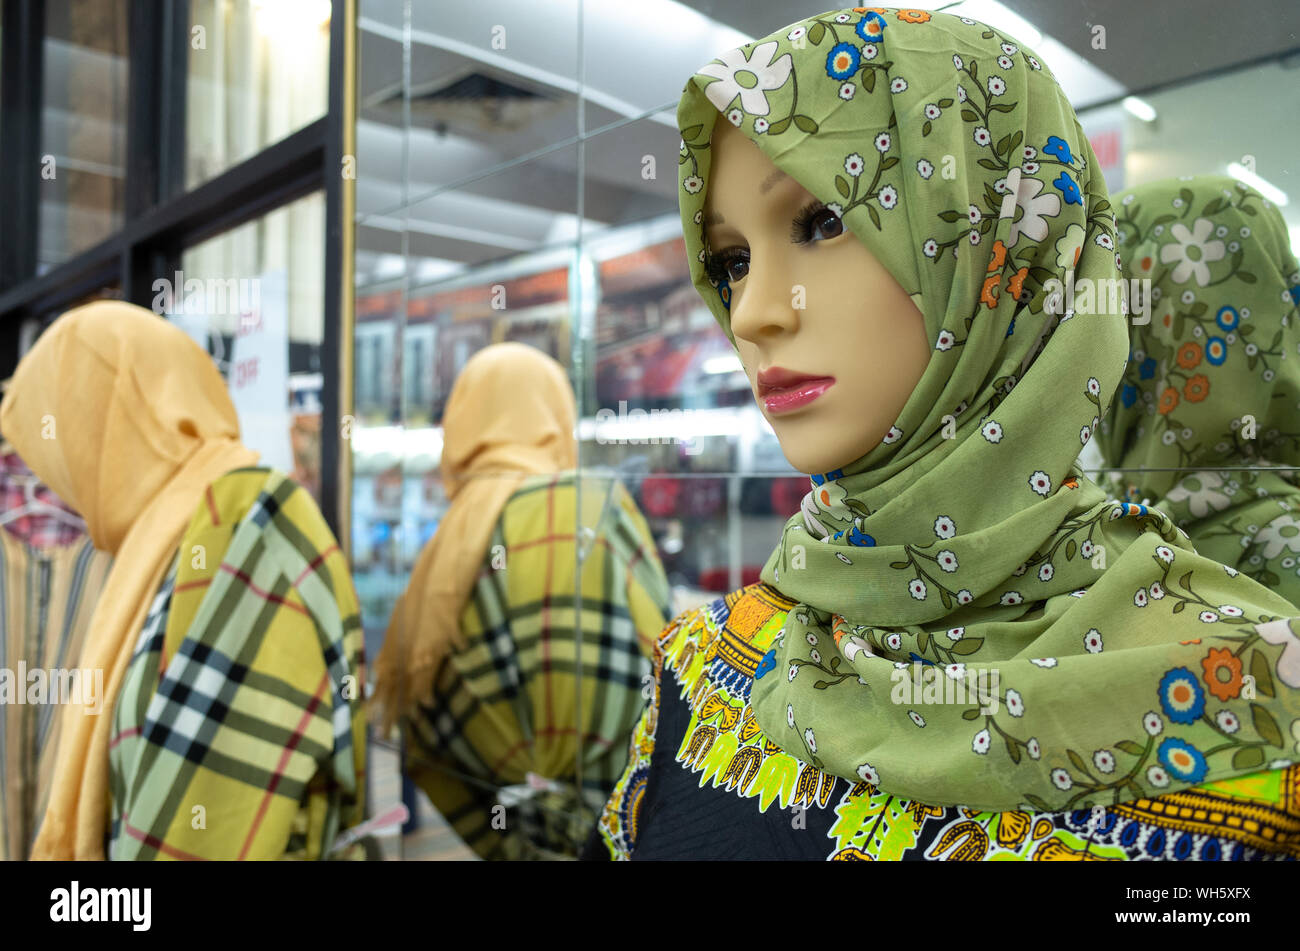 Nahaufnahme von einer Schaufensterpuppe mit grünen geblümten moslemischen Hijab gegen Spiegel außerhalb Clothing Store angezeigt. Stockfoto